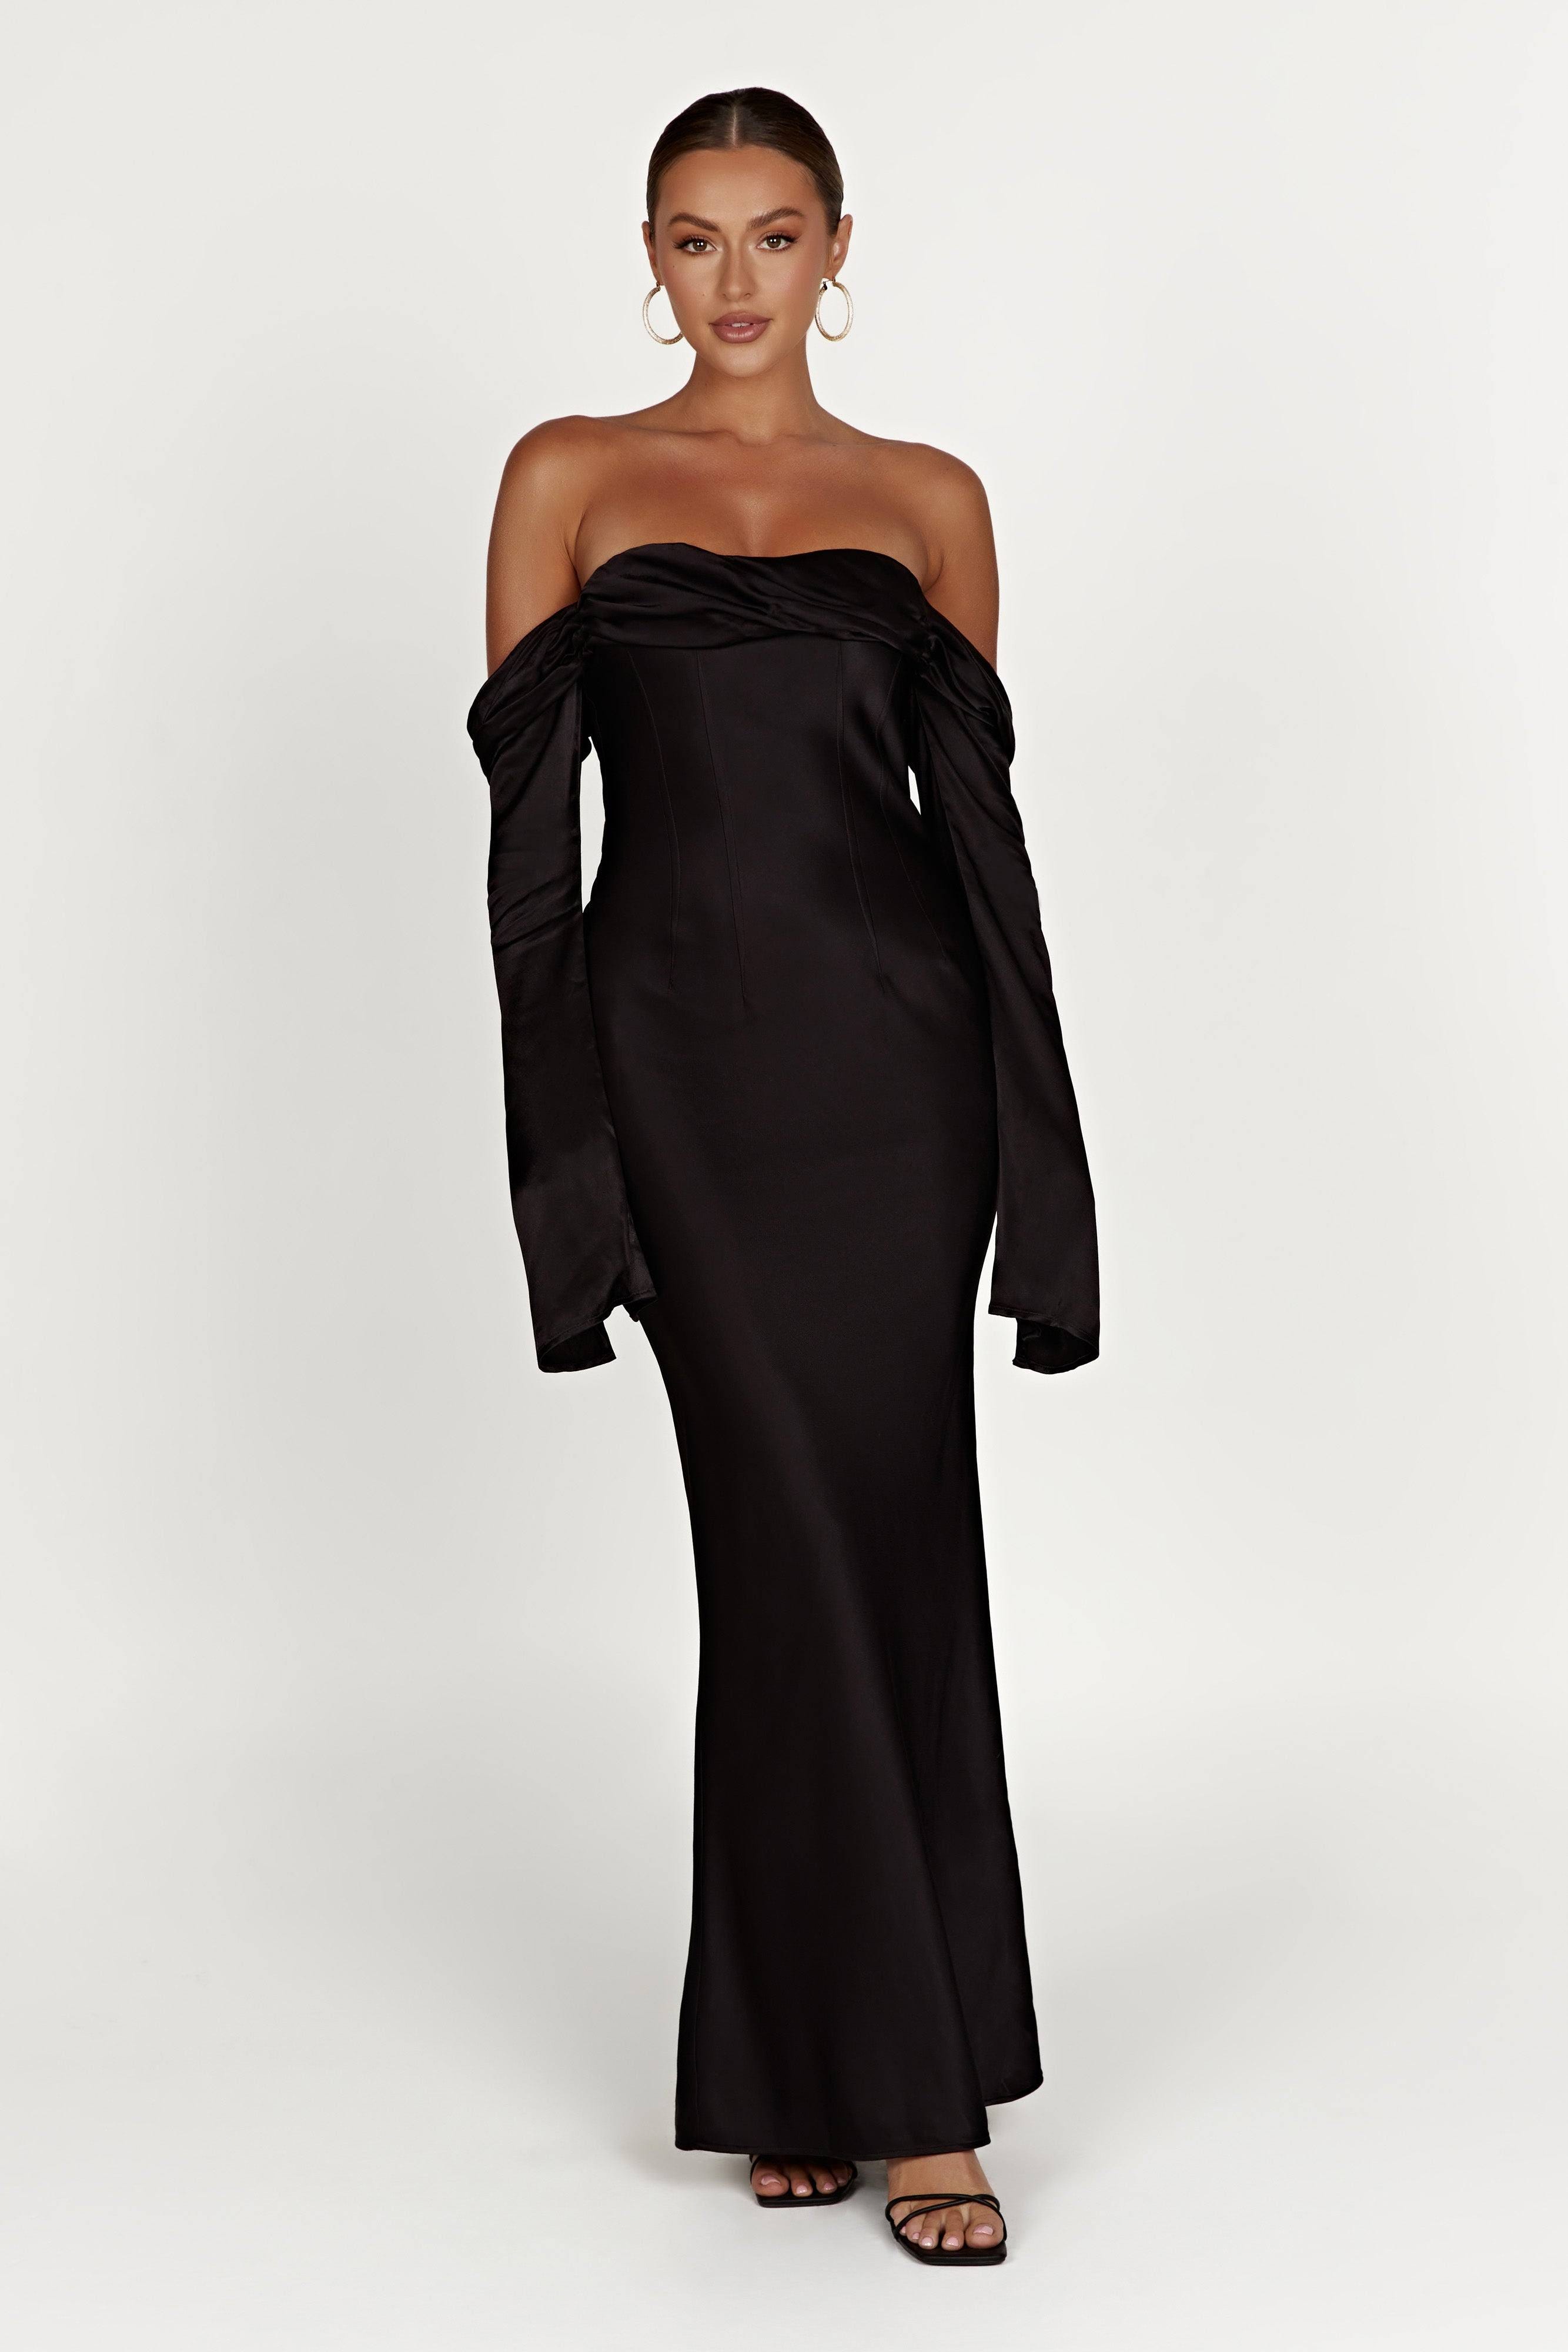 Cowl Neck Maxi Dress | Stunning Black Off Shoulder Design | Image